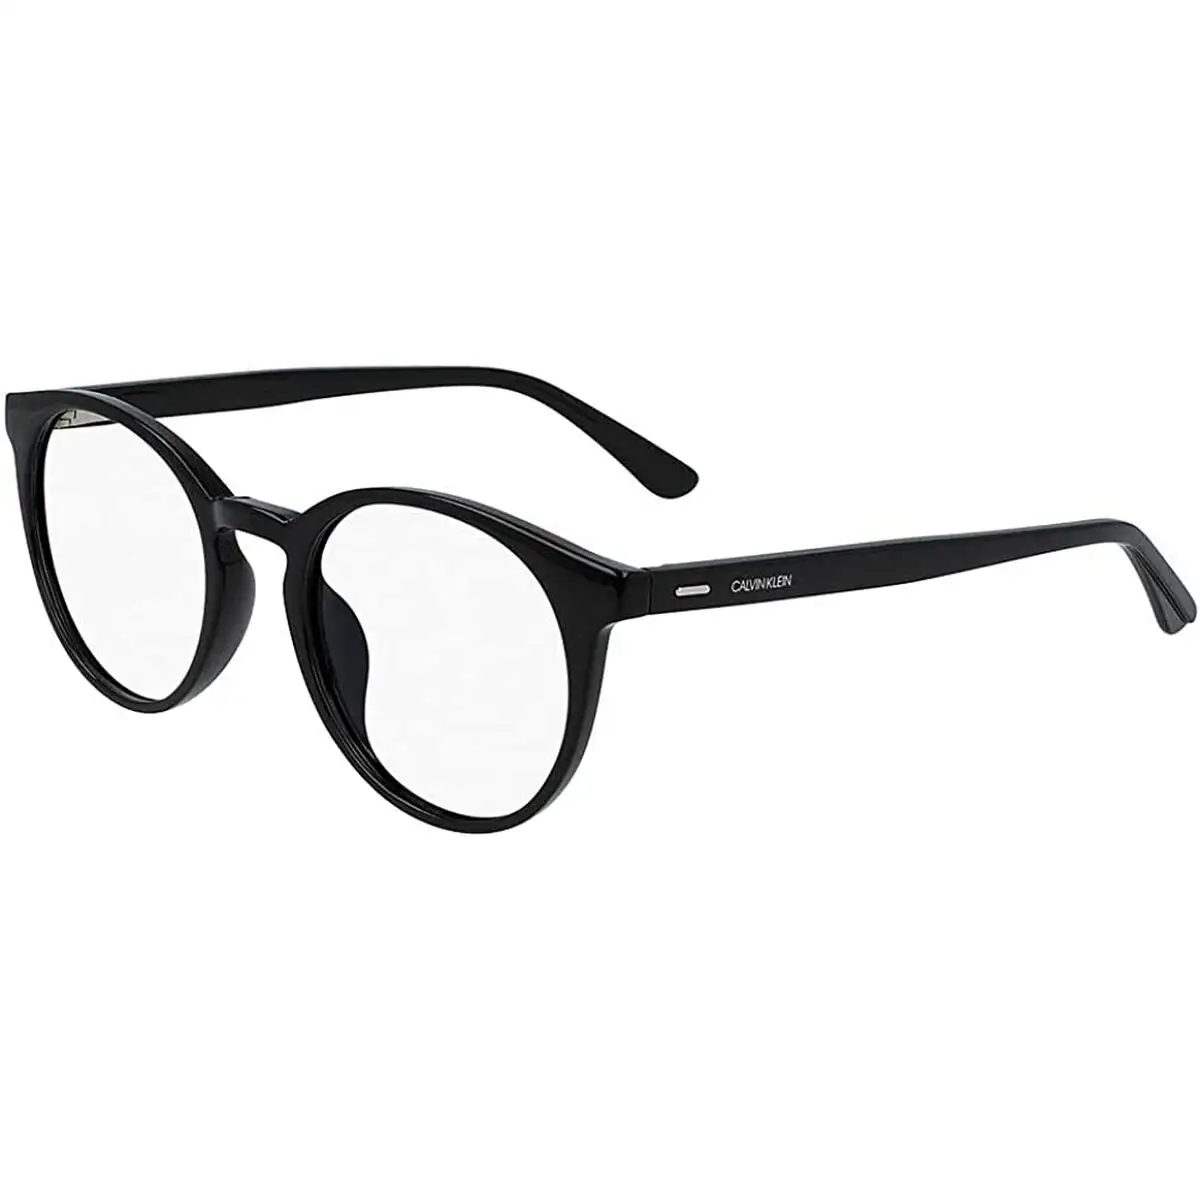 Monture de lunettes homme calvin klein ck20527_9222. Bienvenue sur DIAYTAR SENEGAL - Votre Galerie Shopping Personnalisée. Découvrez un monde de produits diversifiés qui expriment votre style unique et votre passion pour la qualité.